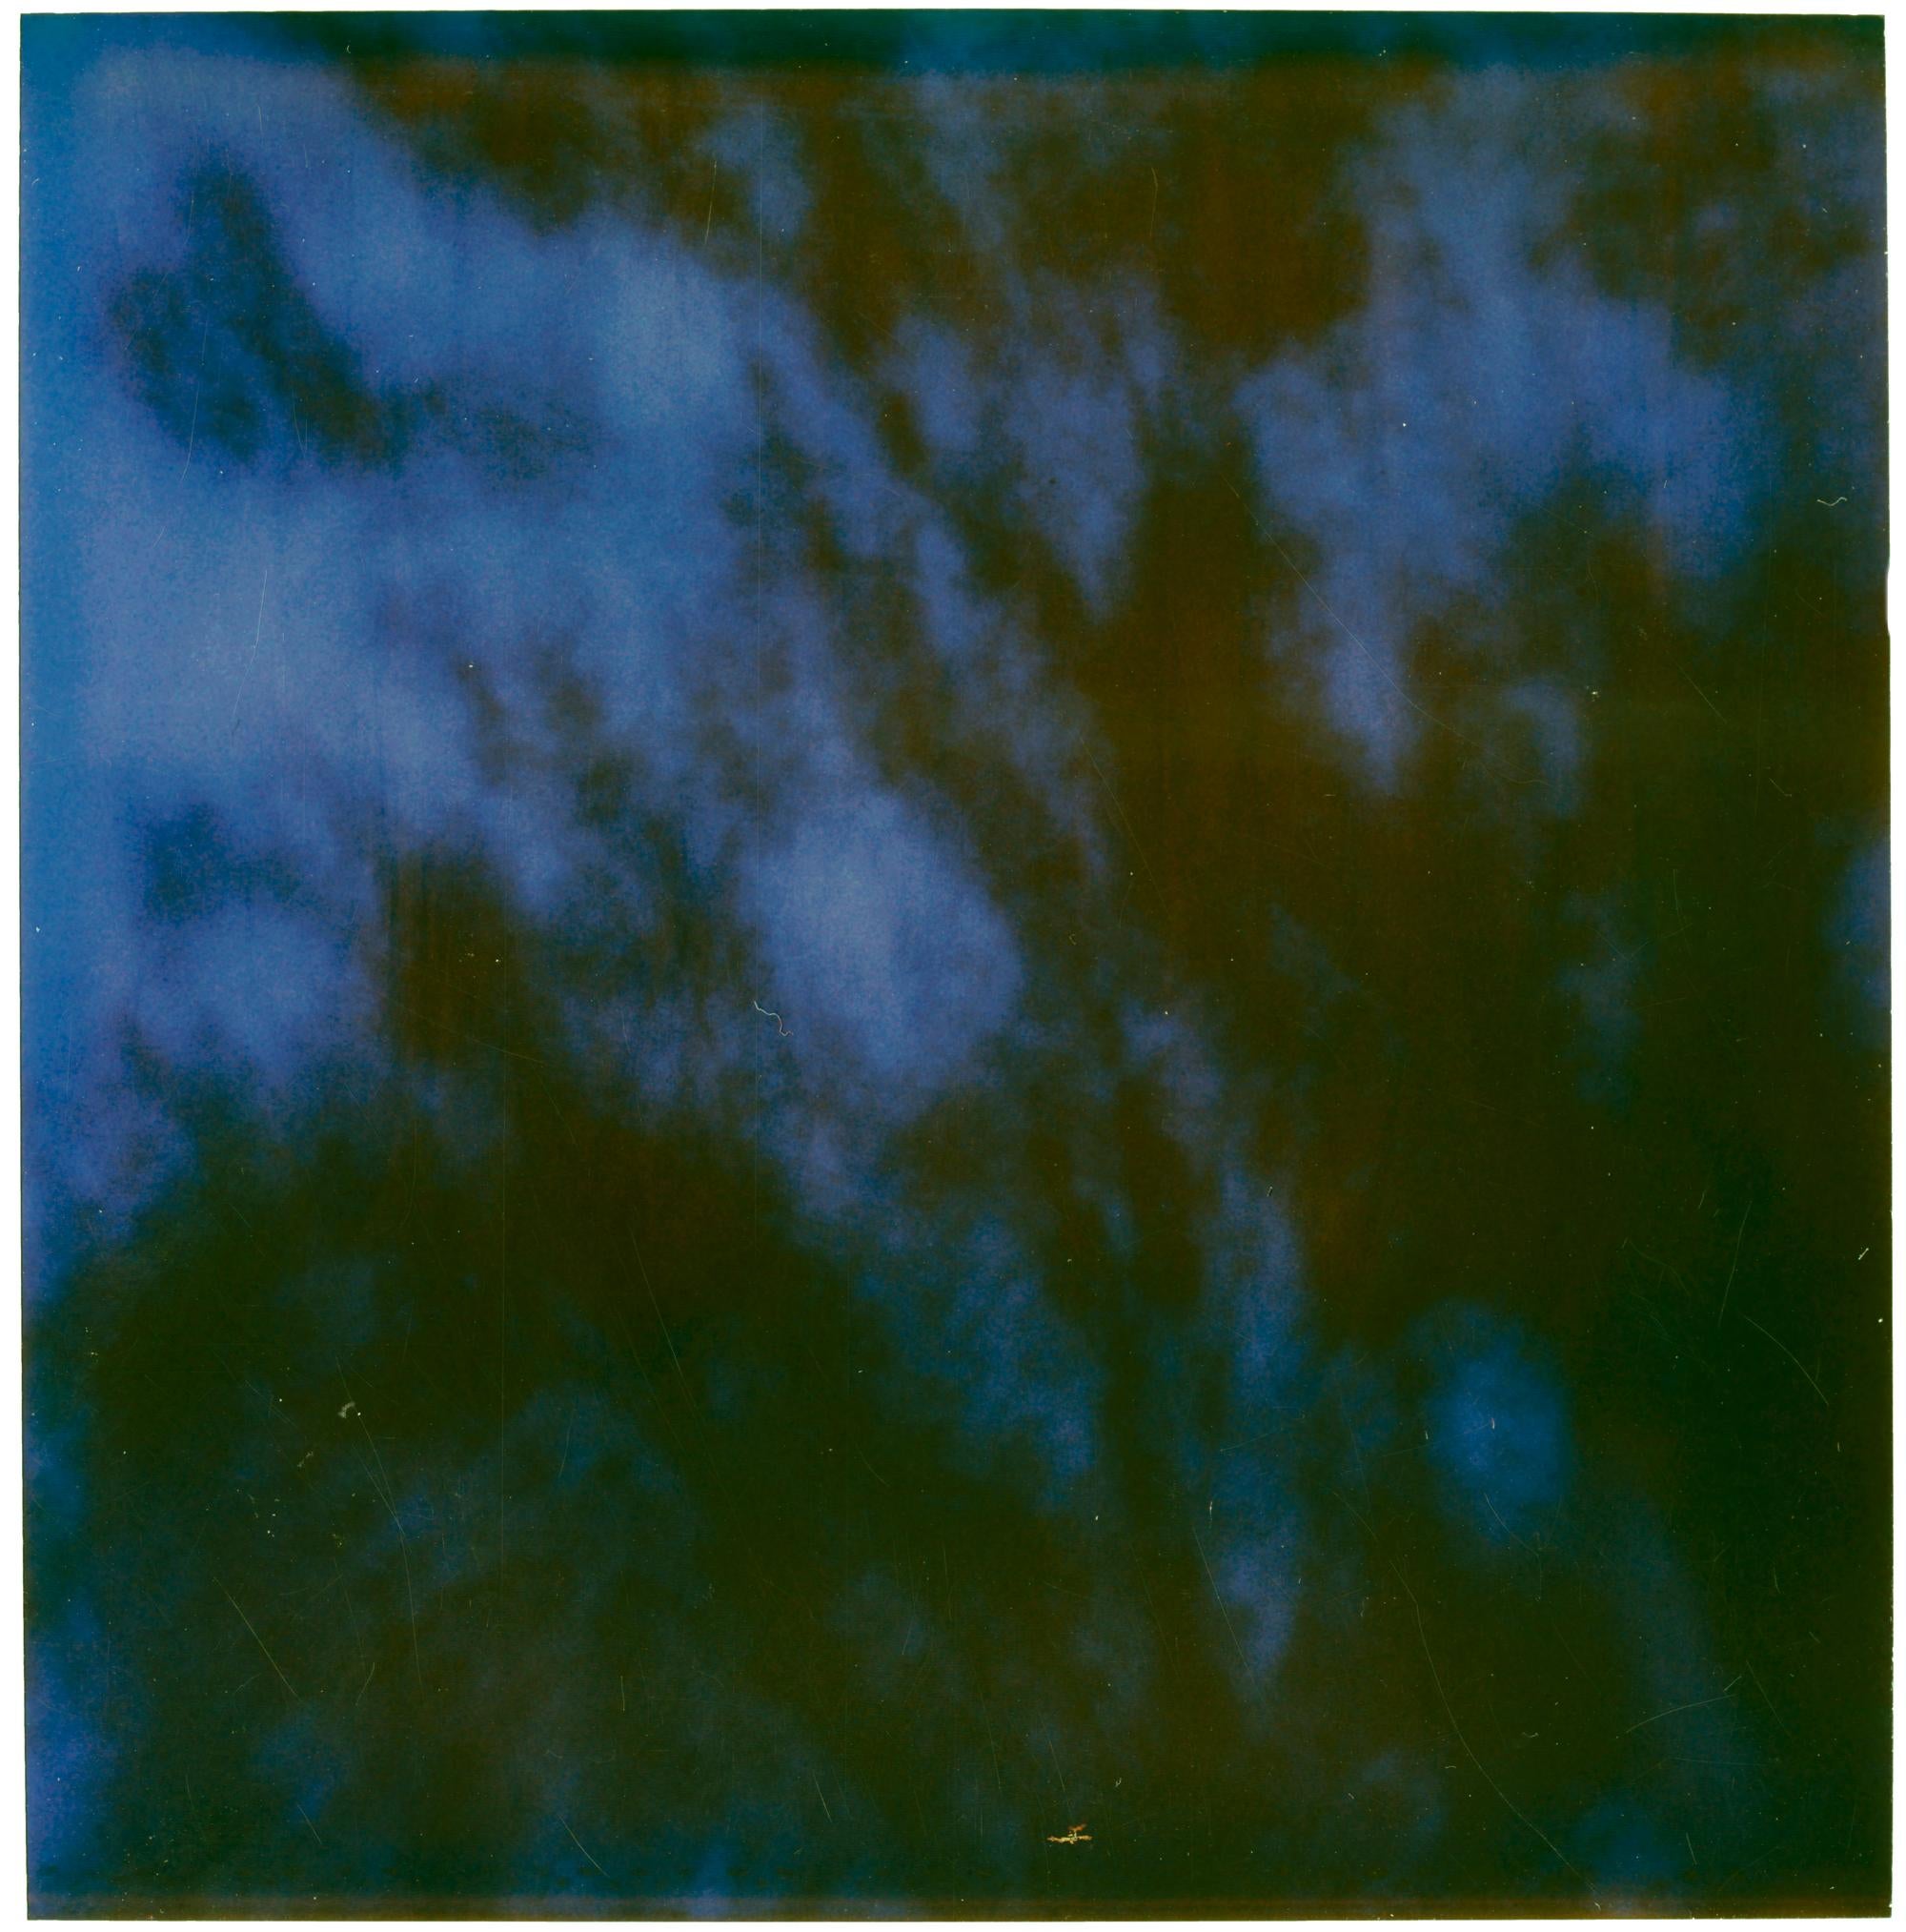 Stefanie Schneider Landscape Photograph – Baum in der Nacht (letzte Bilderausstellung)